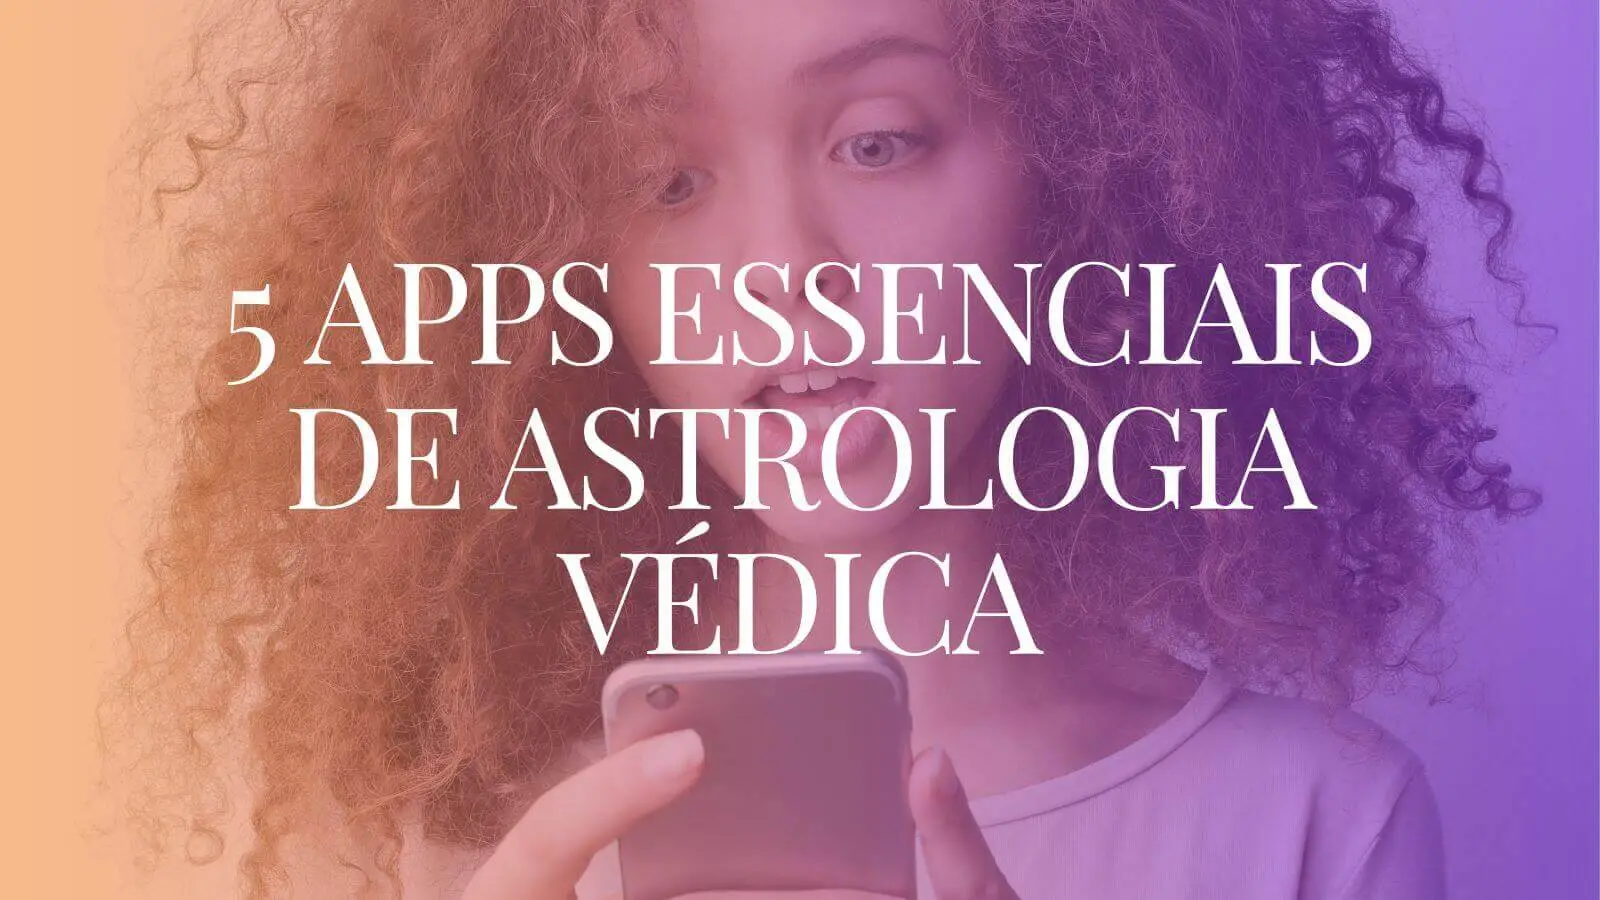 5 apps essenciais de astrologia védica